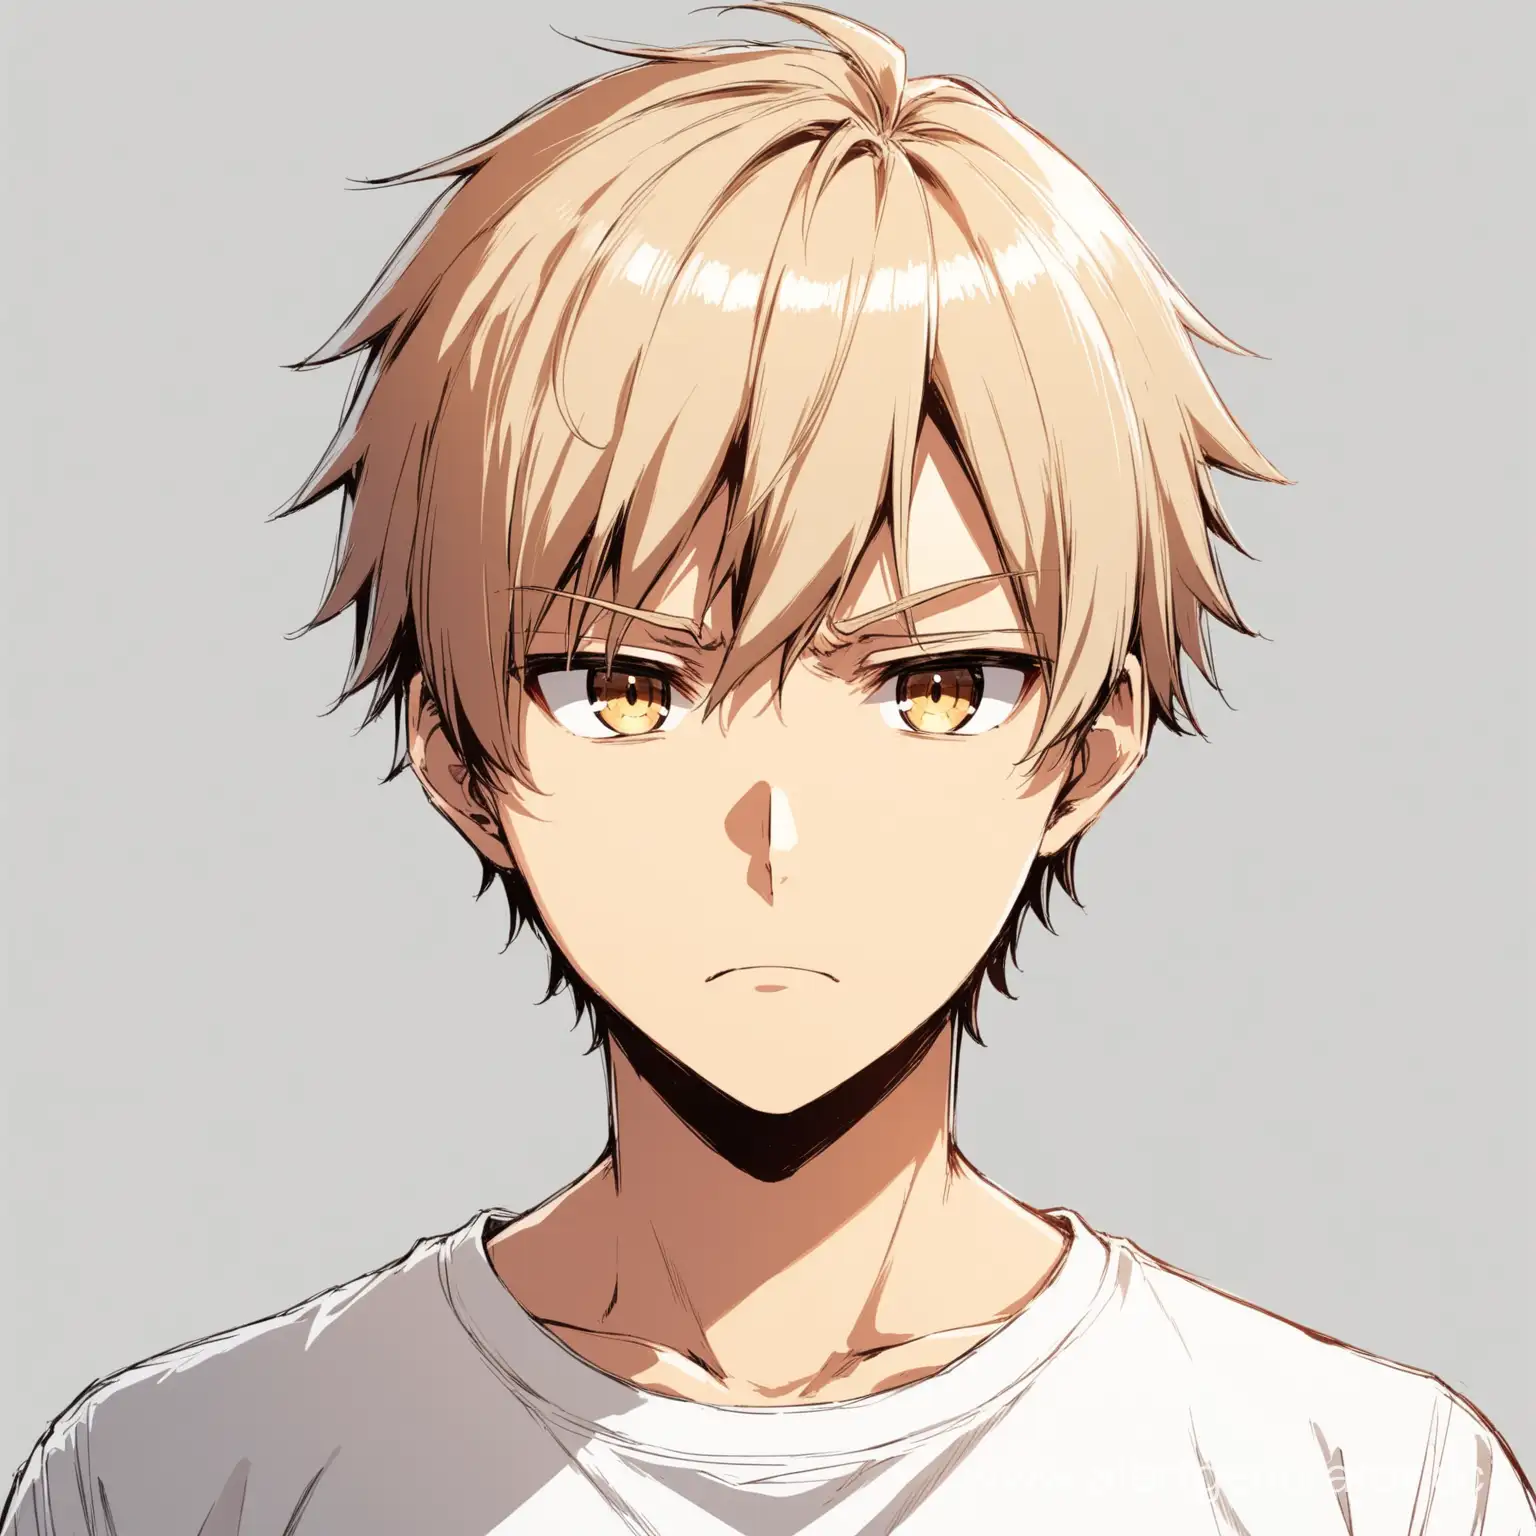 Аниме персонаж, парень со светлыми ухоженными короткими волосами и с карими глазами, в белой футболке, востороженное выражение лица, изолированный объект, чтобы его было видно полностью и на белом фоне.